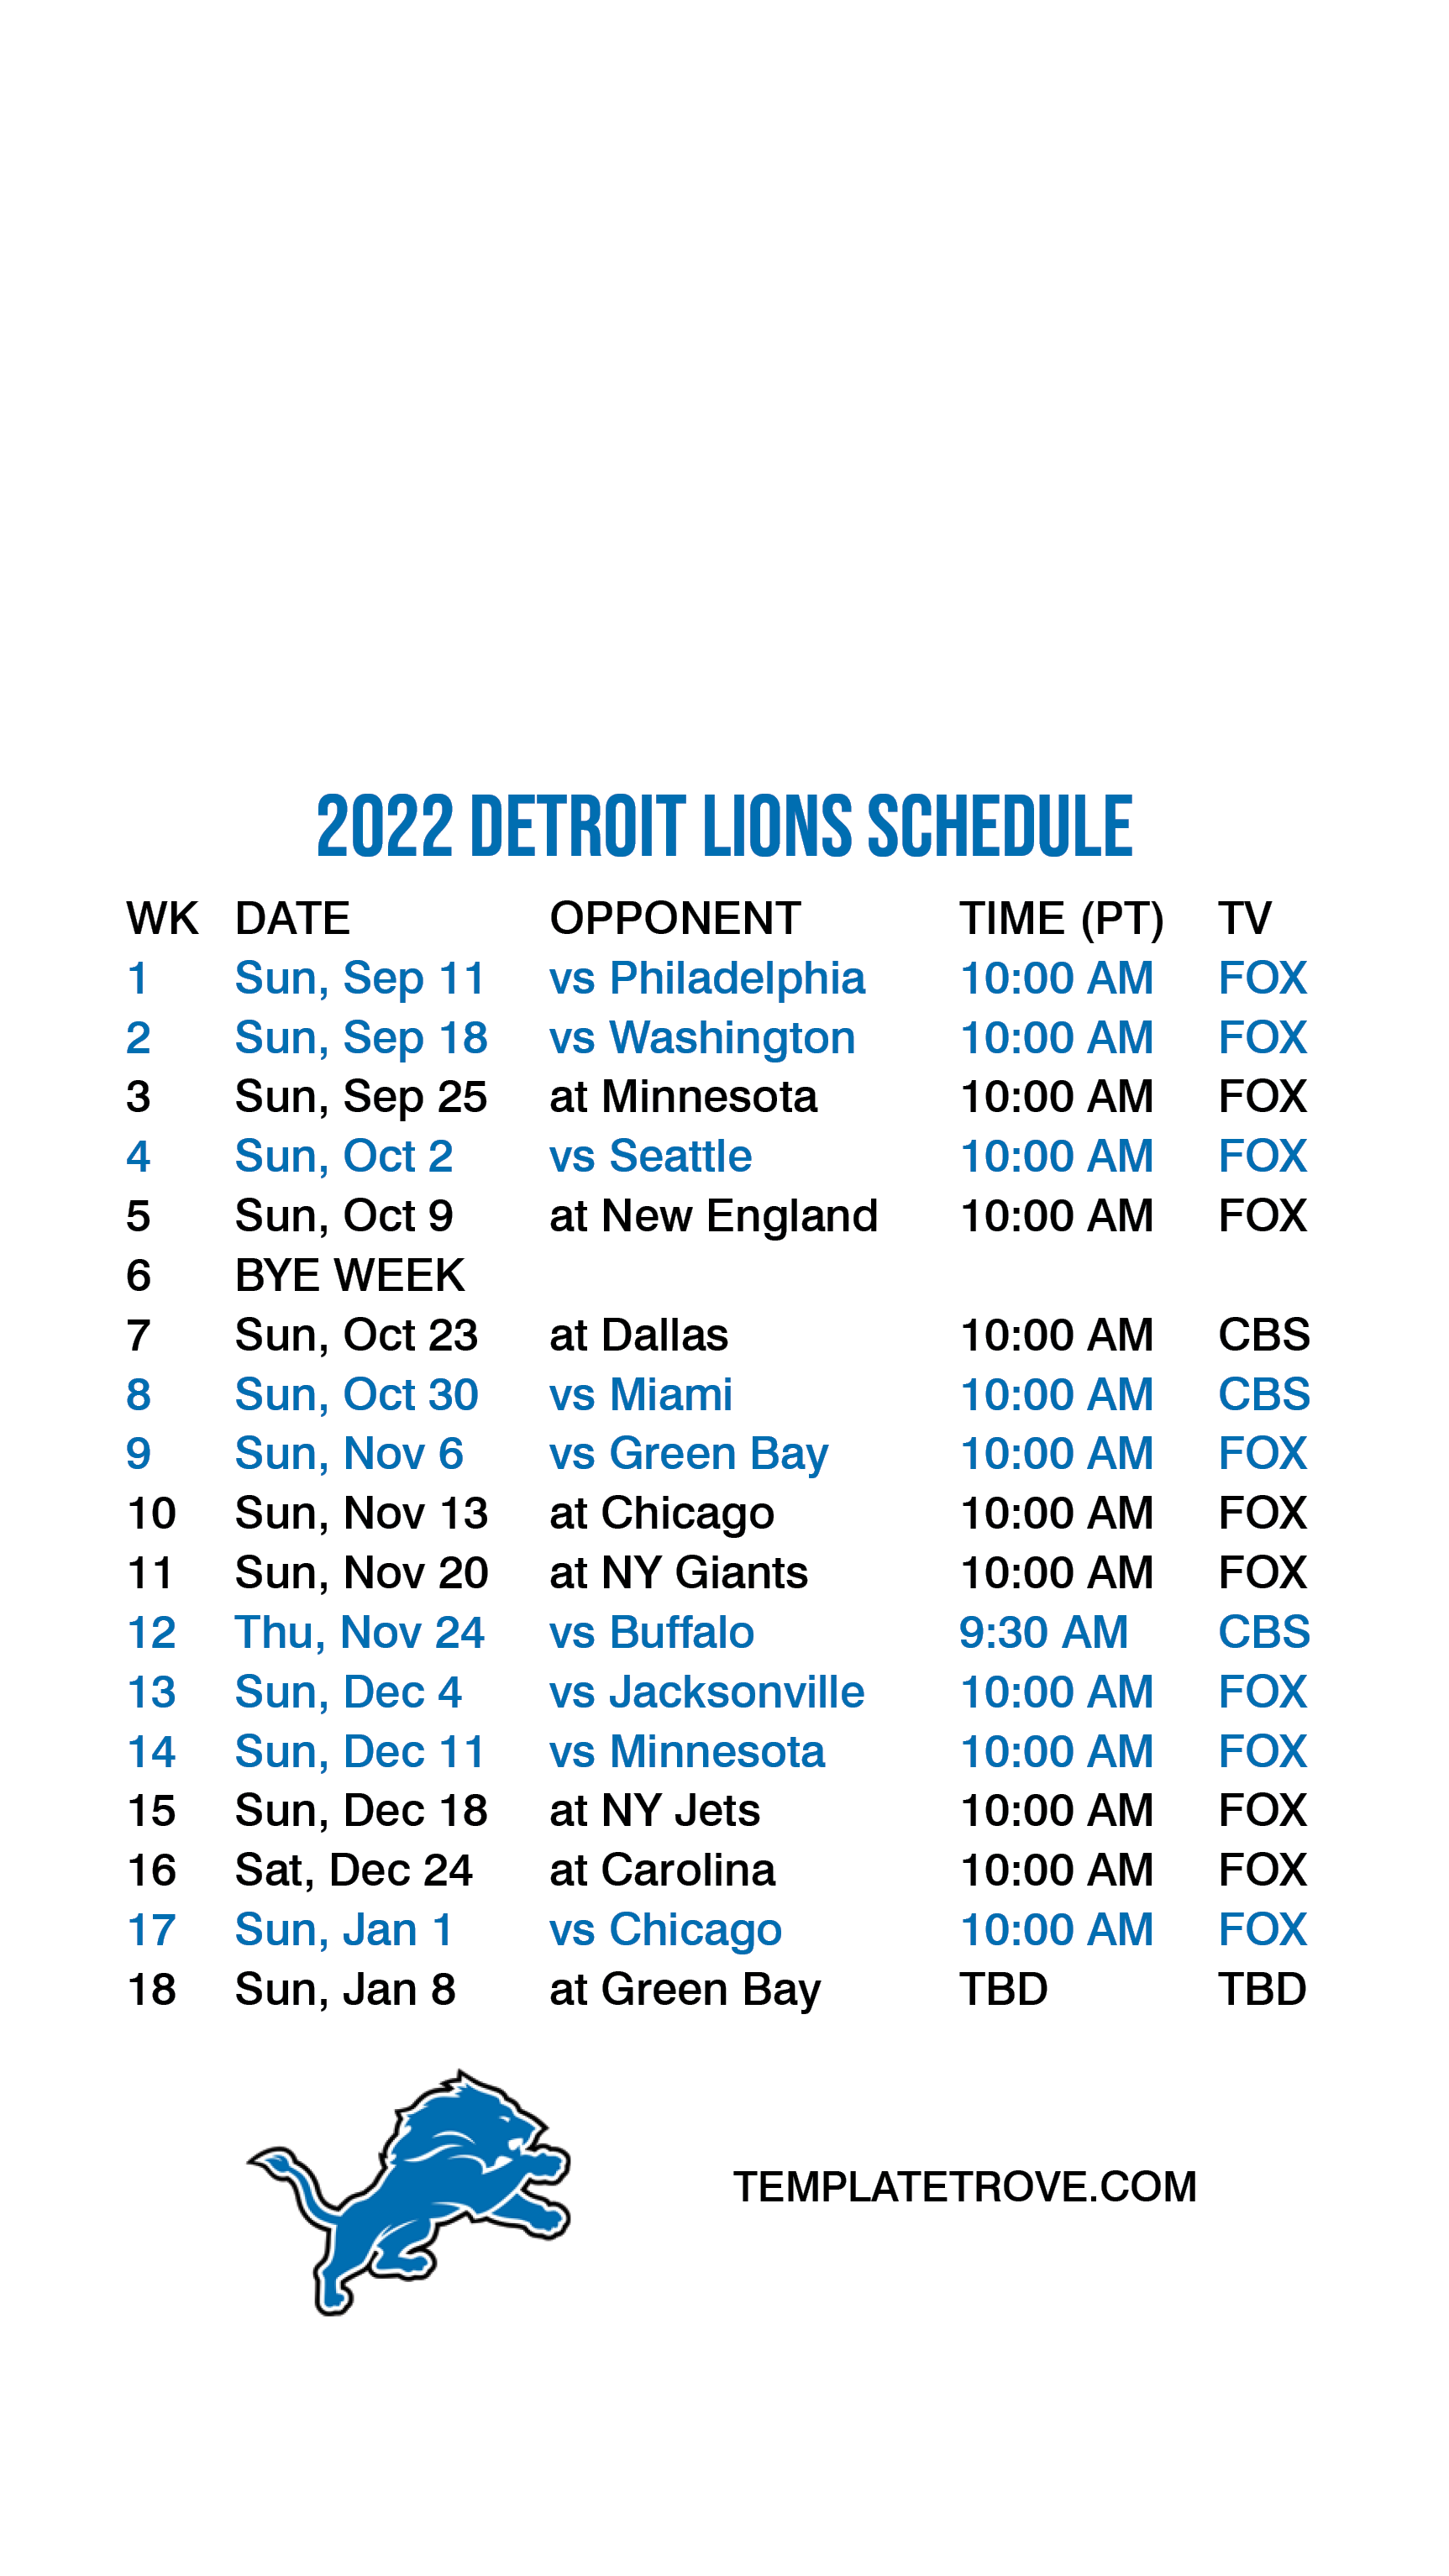 2023 Detroit Lions Schedule 2023 Calendar